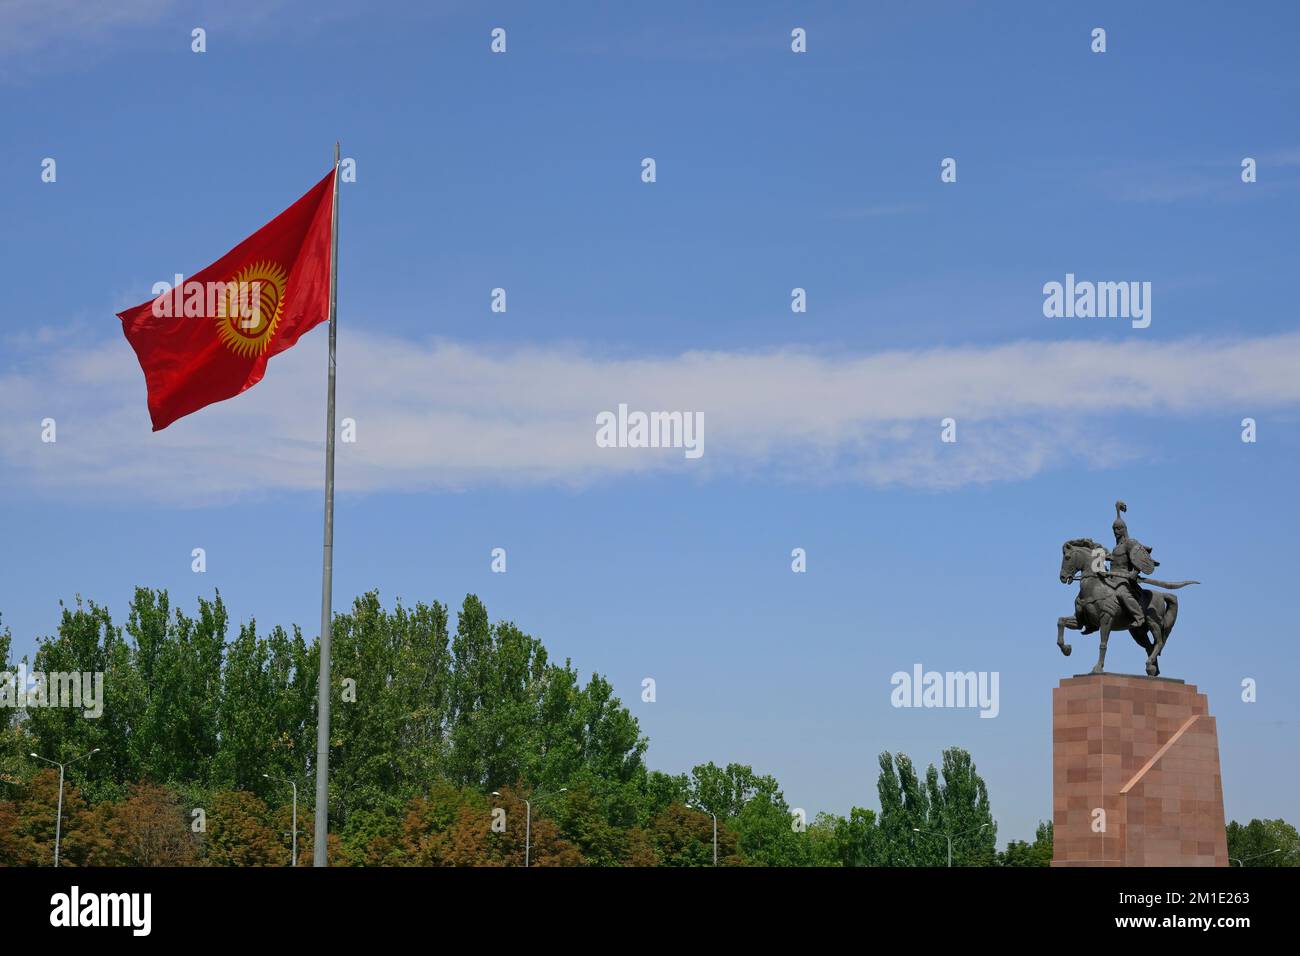 Monument de Manas inspiré d'un drapeau épique traditionnel et kirghize, place Ala-Too, Bichkek, Kirghizistan Banque D'Images